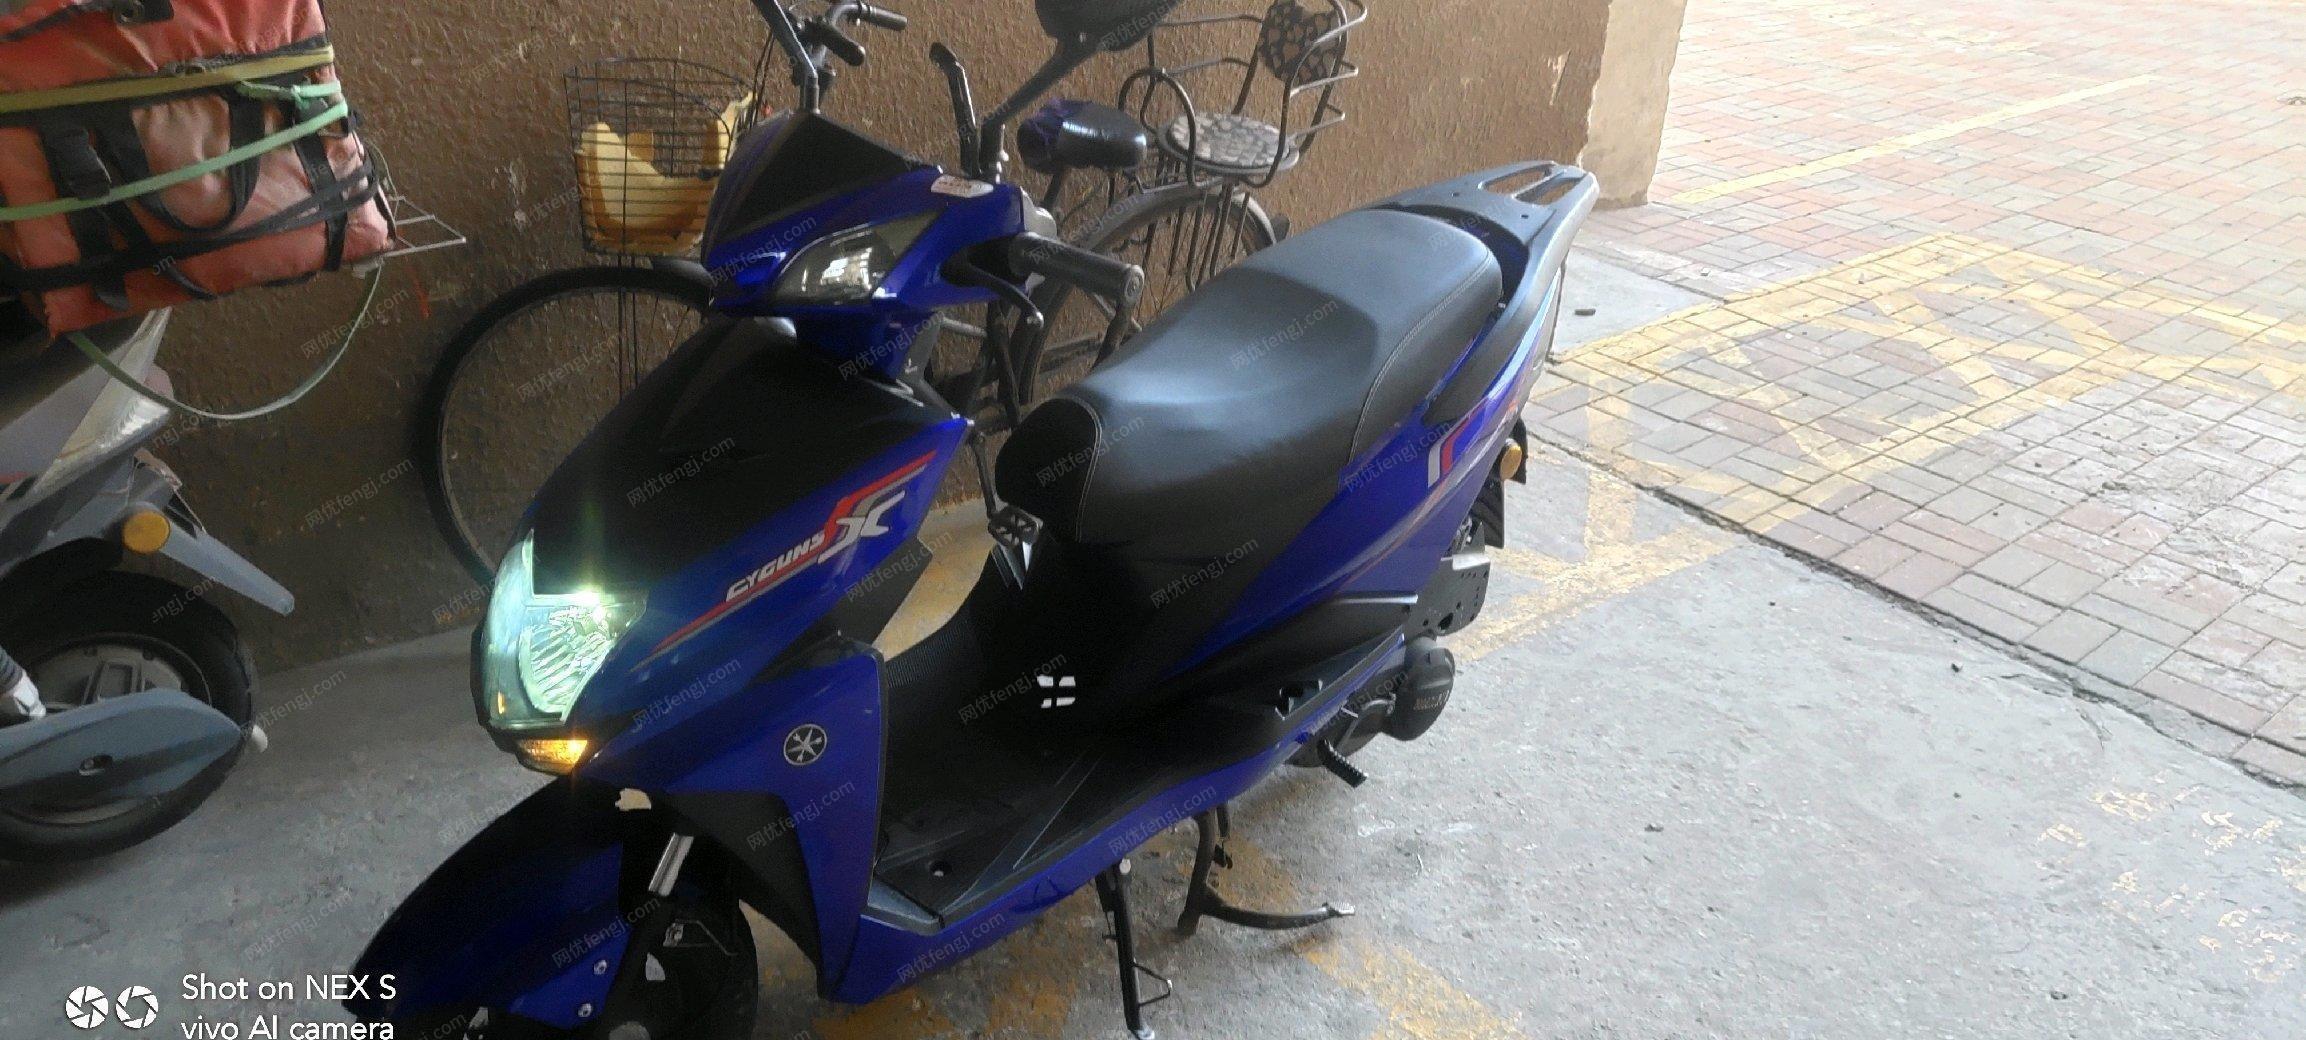 天津西青区出售二手摩托 省油代步 一点毛病没有 自己骑的